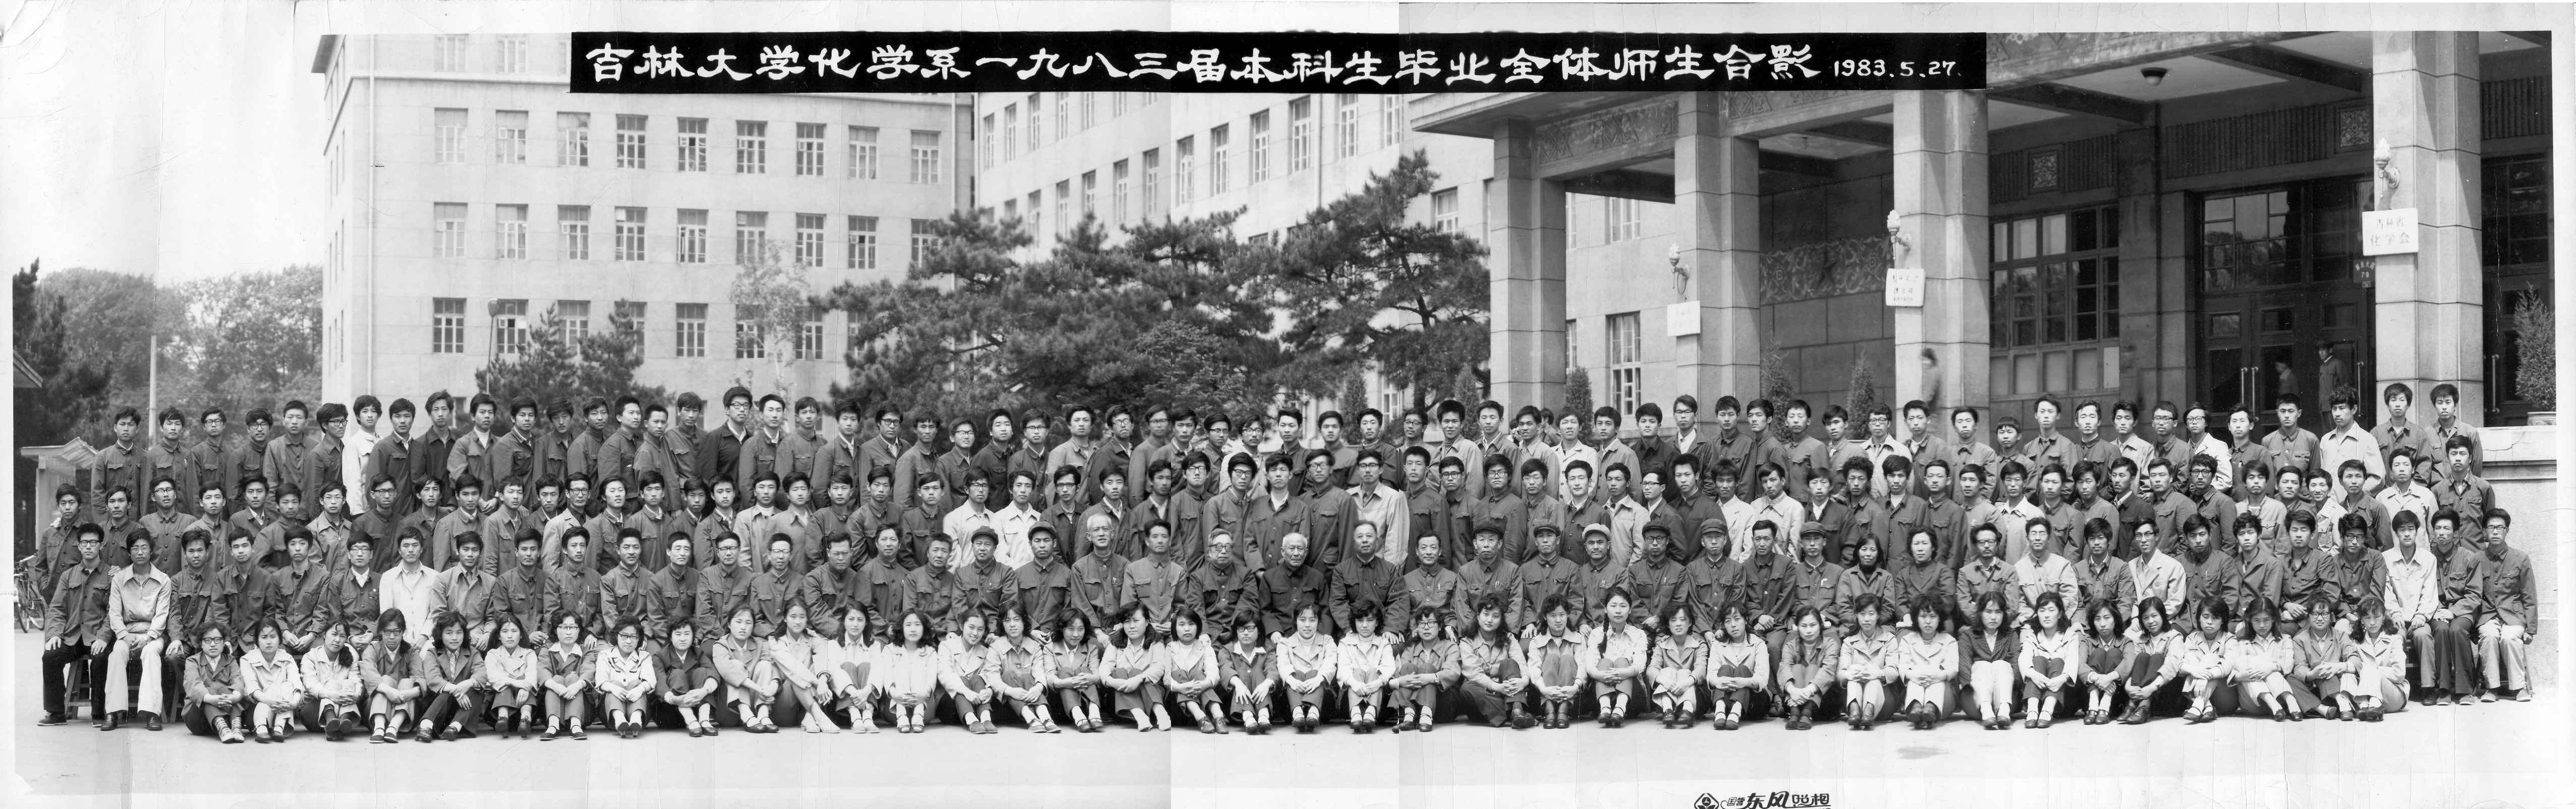 baoyu133永远免费观看化学系1983届本科生毕业全体师生合影